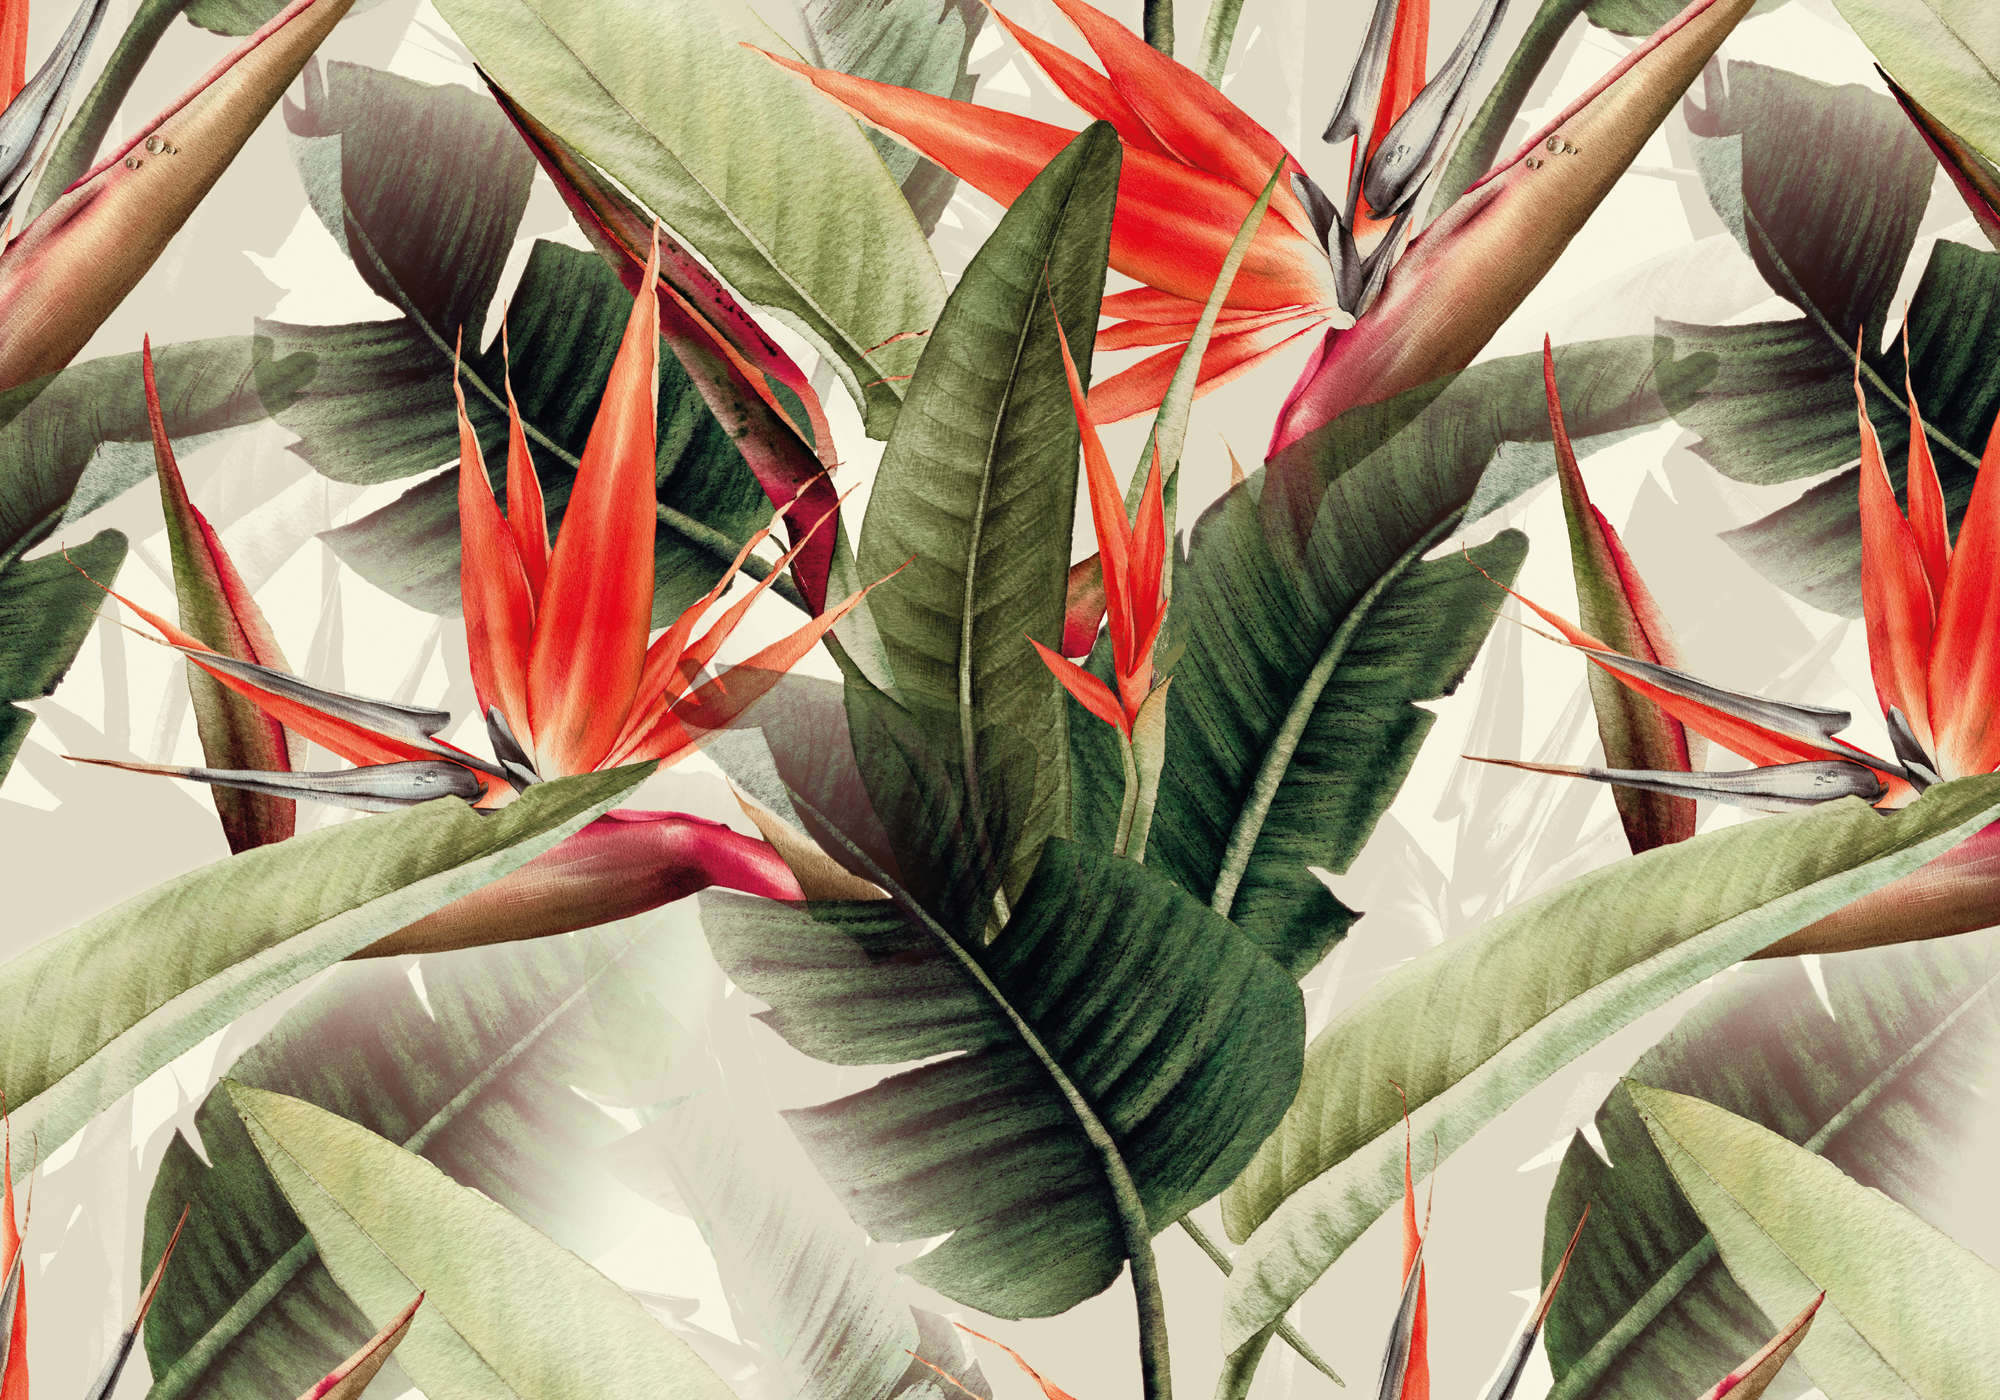             Fototapete Dschungel Blättern & Paradiesvogelblume
        